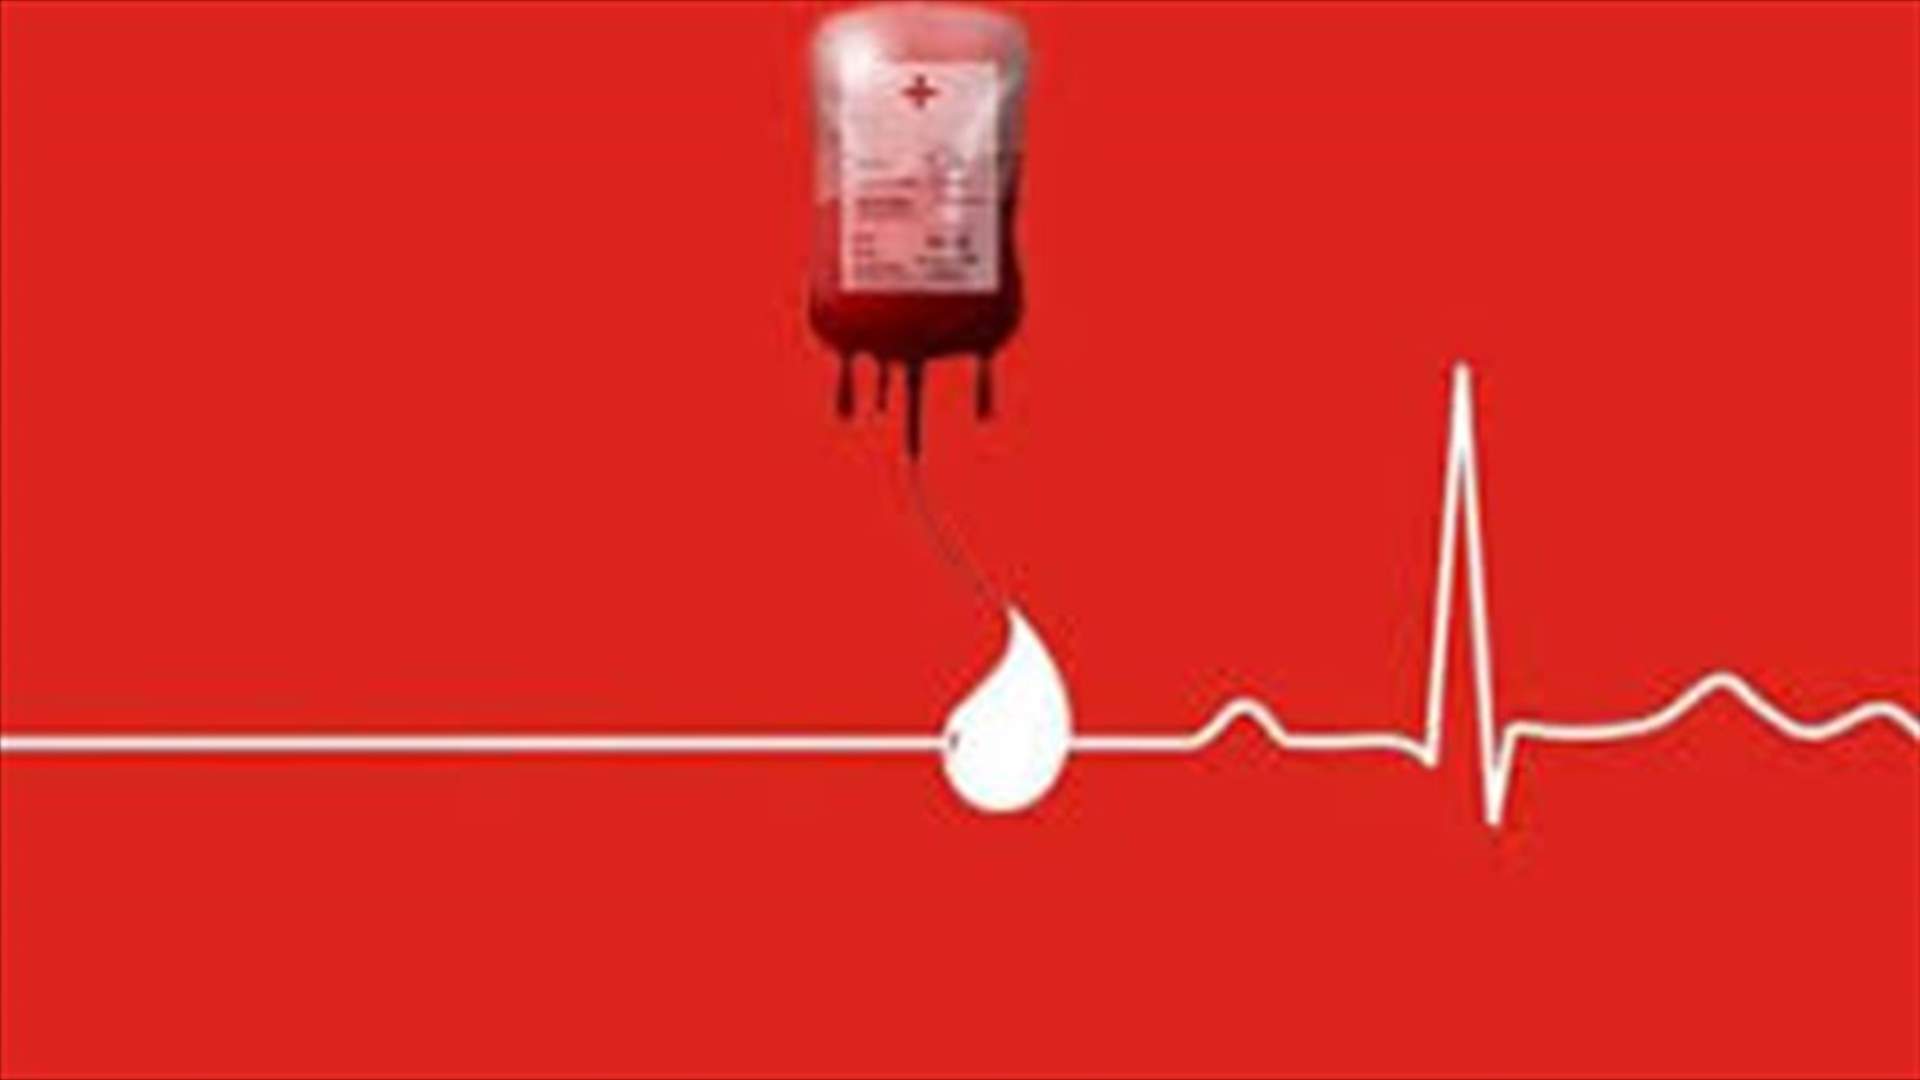 مريضة بحاجة ماسة غداً لـ3 وحدات دم من فئة A+ وO+ في مستشفى رزق... للتبرع الرجاء الاتصال على الرقم التالي: 03117995